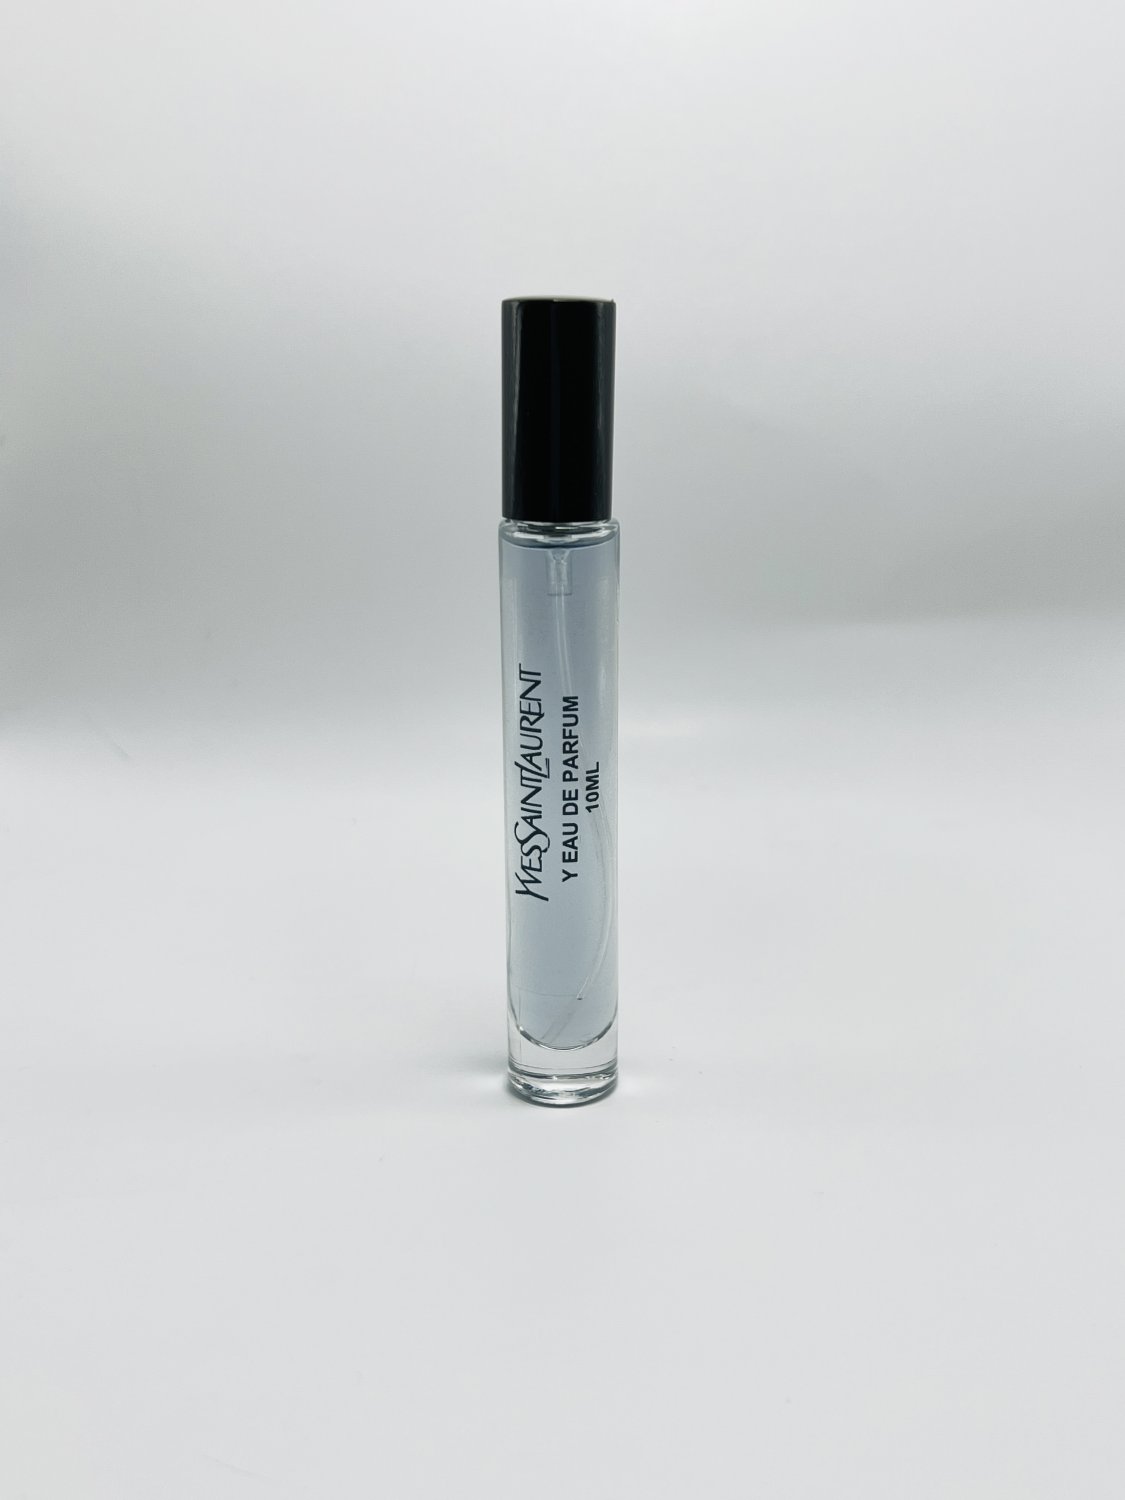 Yves Saint Laurent Y eau de parfum 10ml Men's Travel Spray